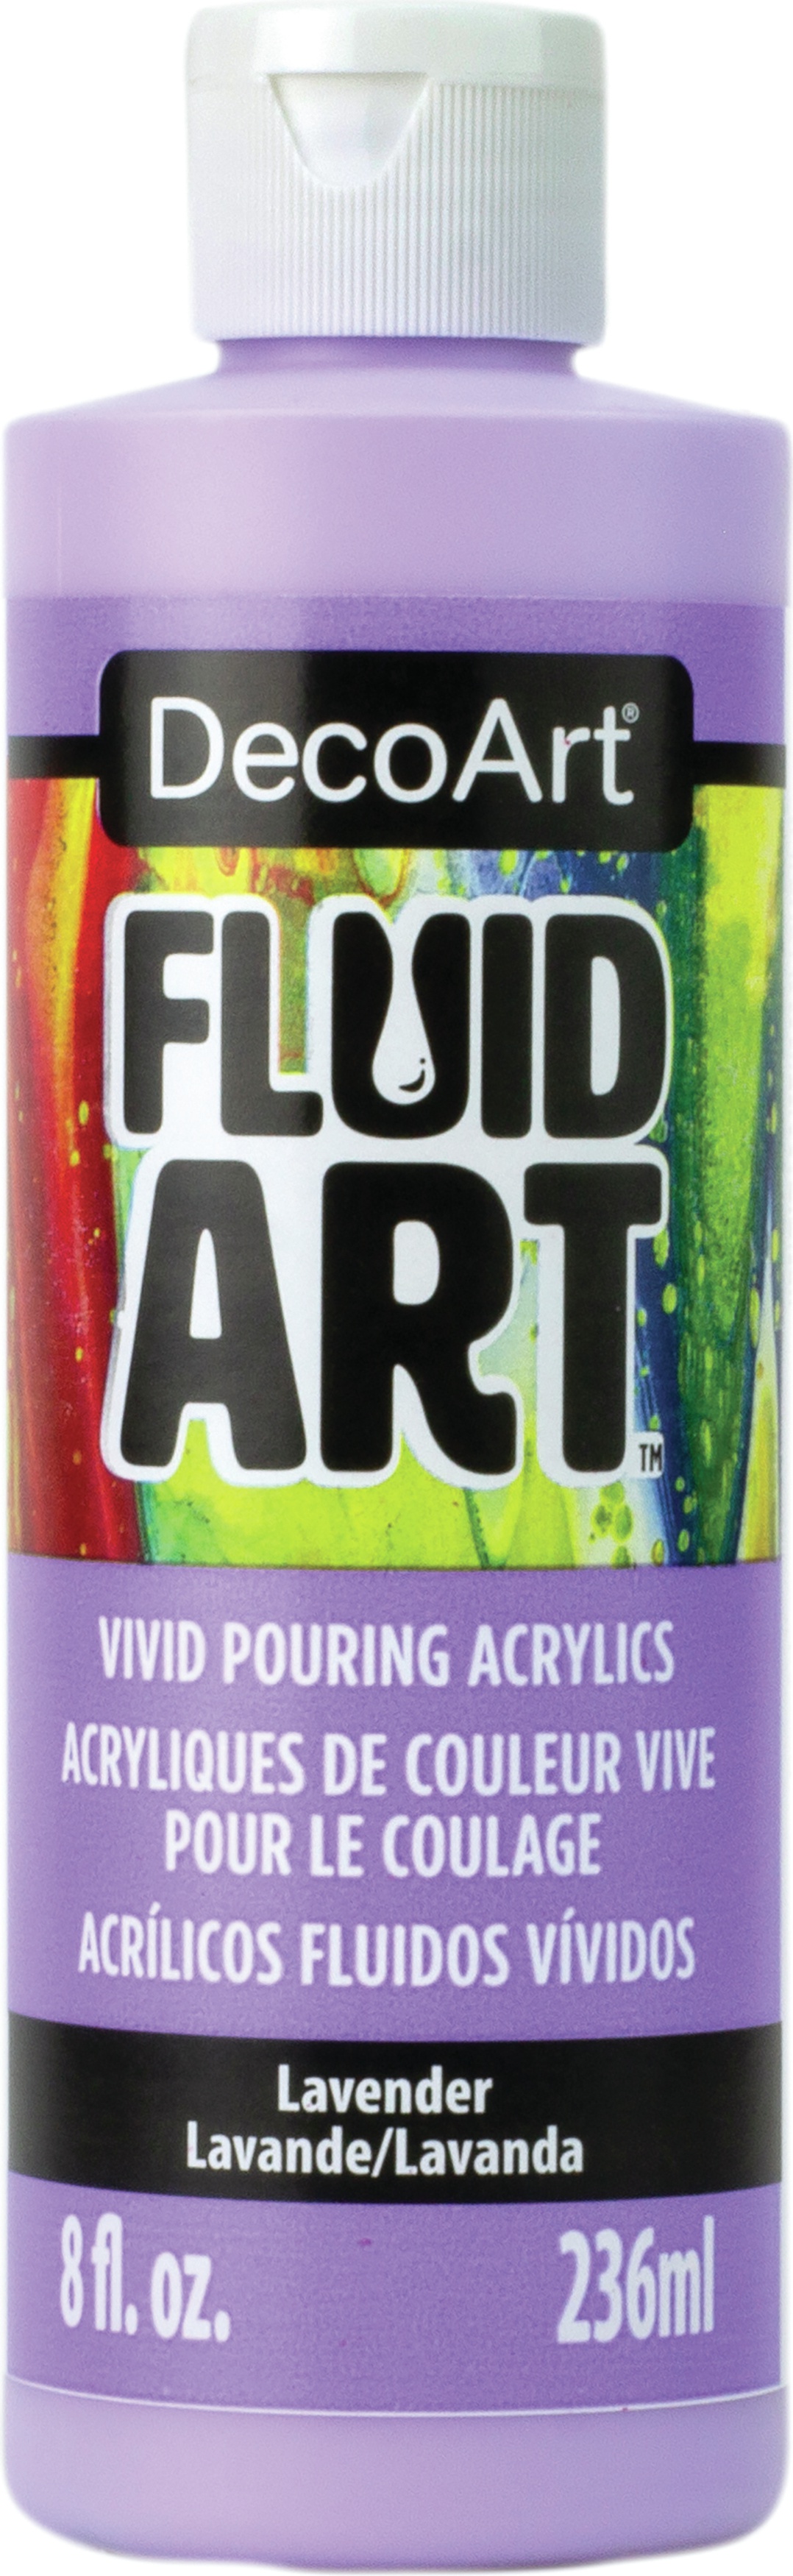 DecoArt FluidArt Ready-To-Pour Acrylic Paint 8oz-Lavender